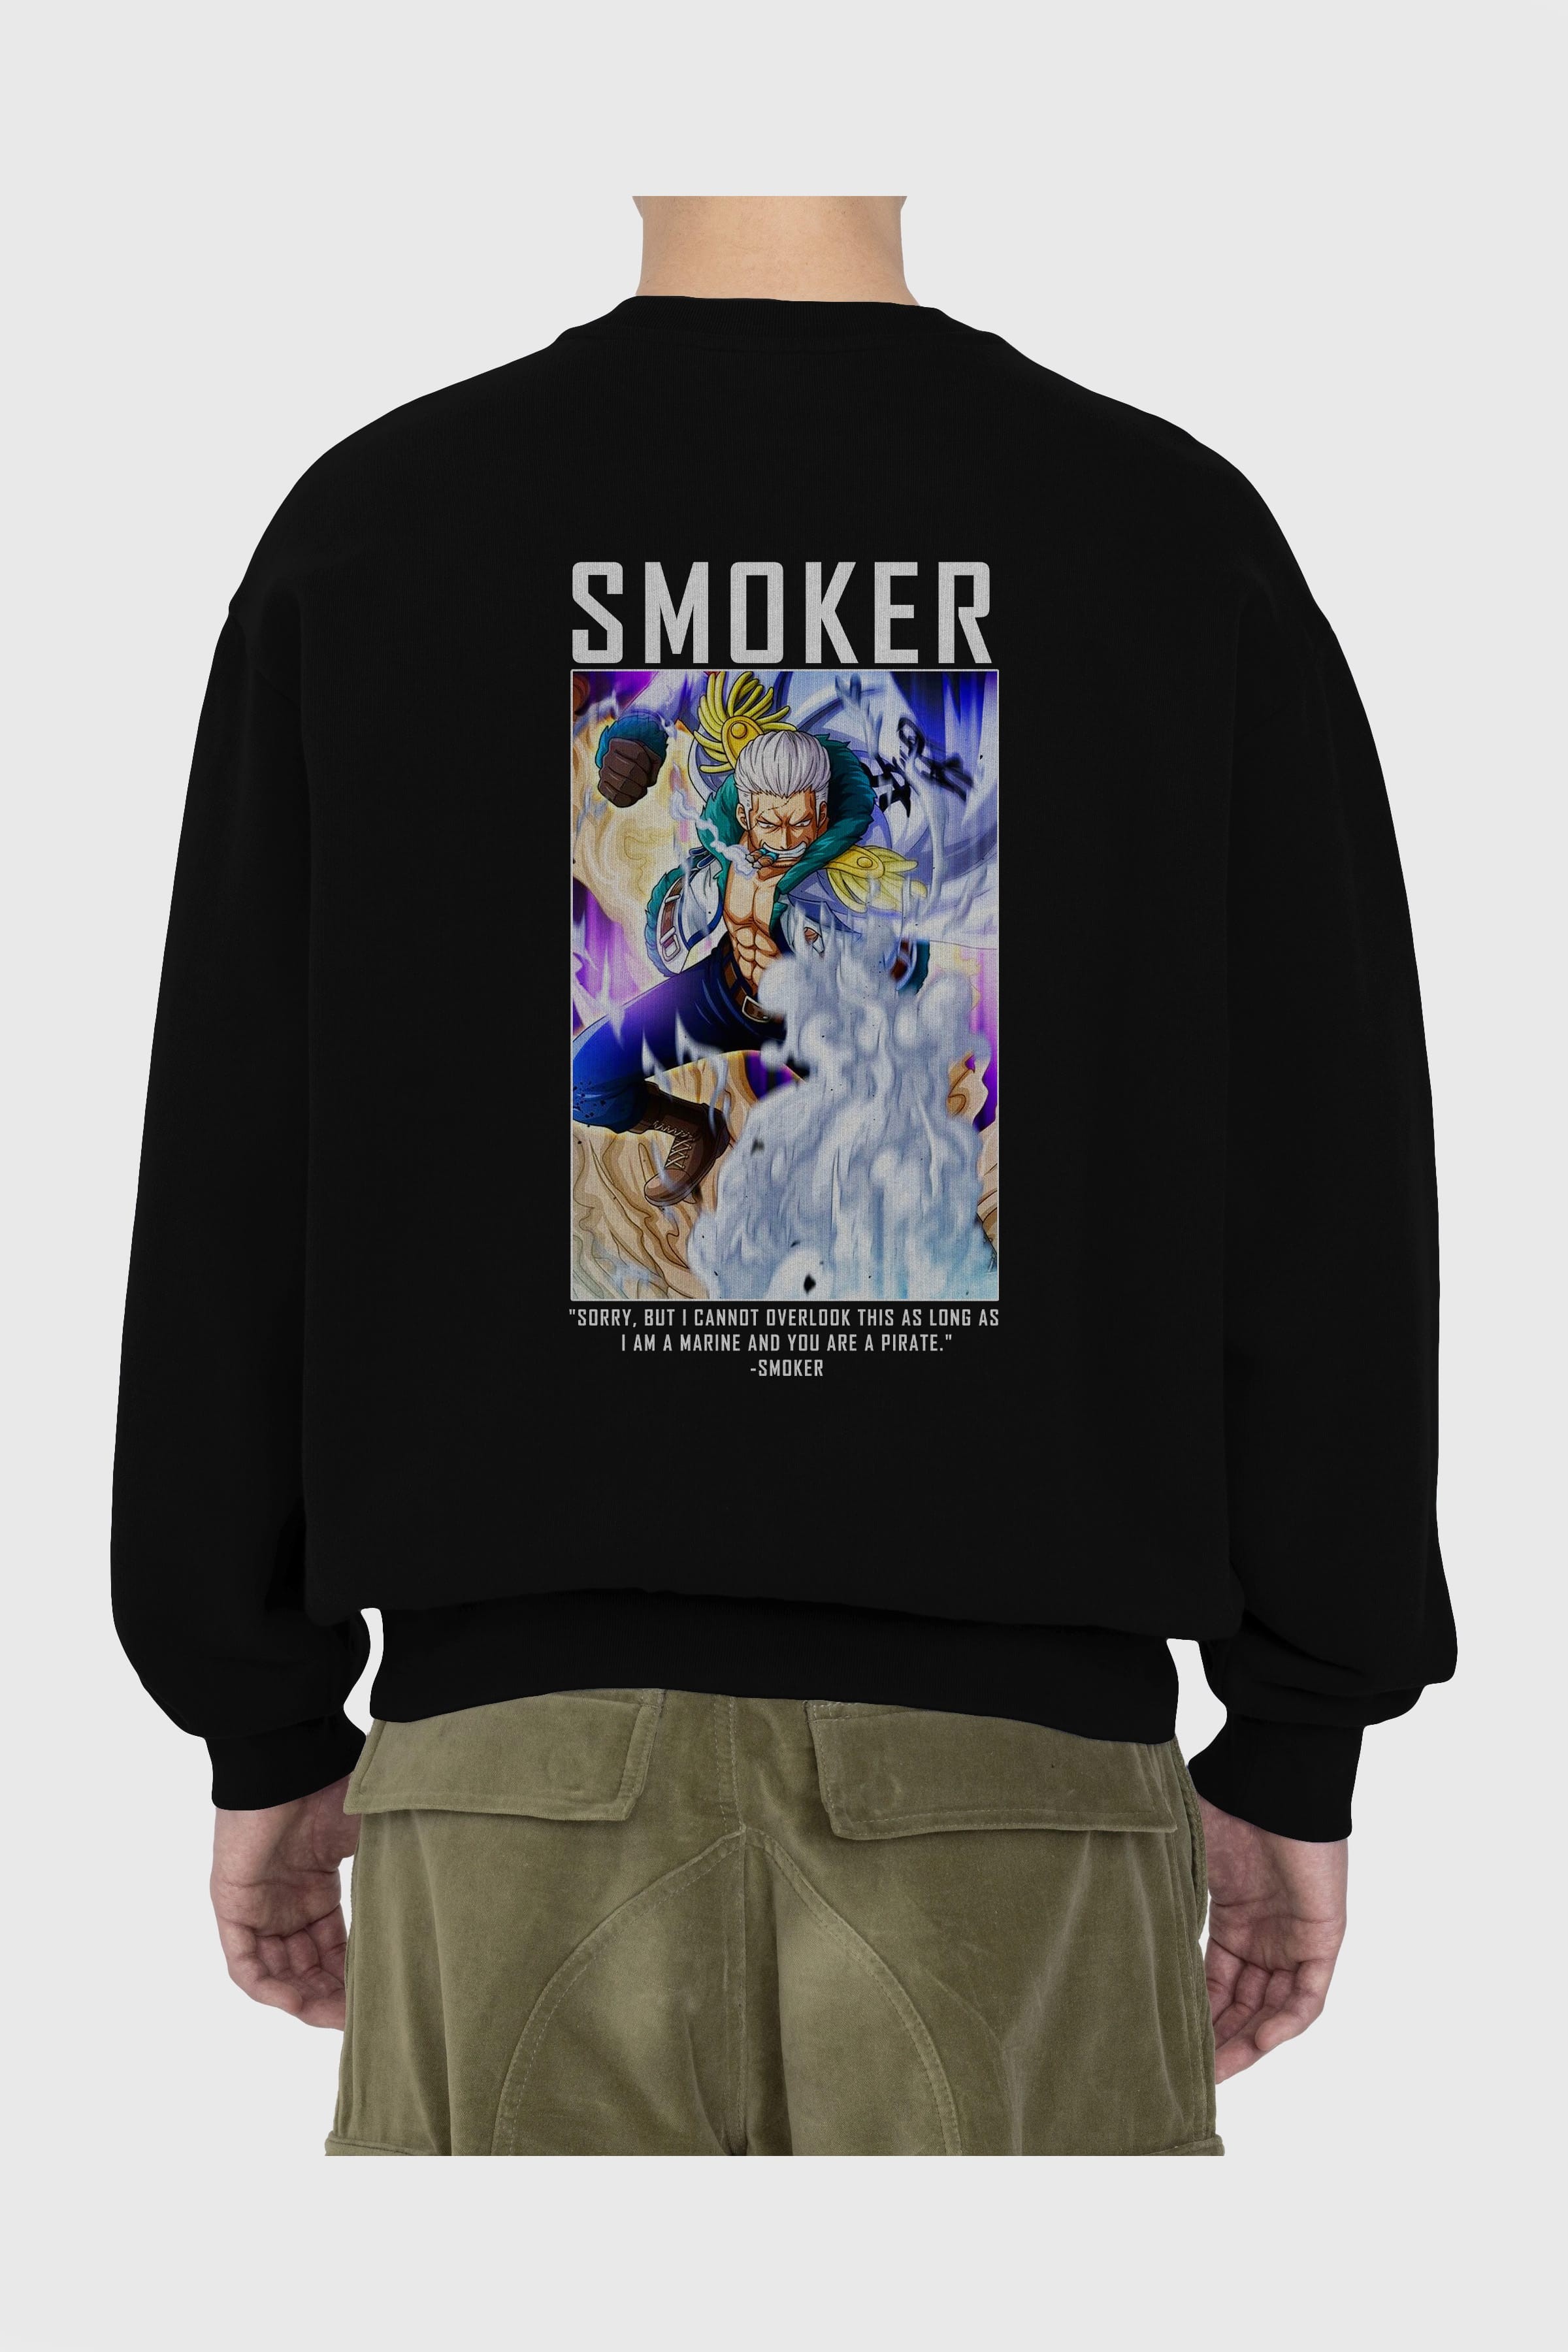 Smoker Arka Baskılı Anime Oversize Sweatshirt Erkek Kadın Unisex